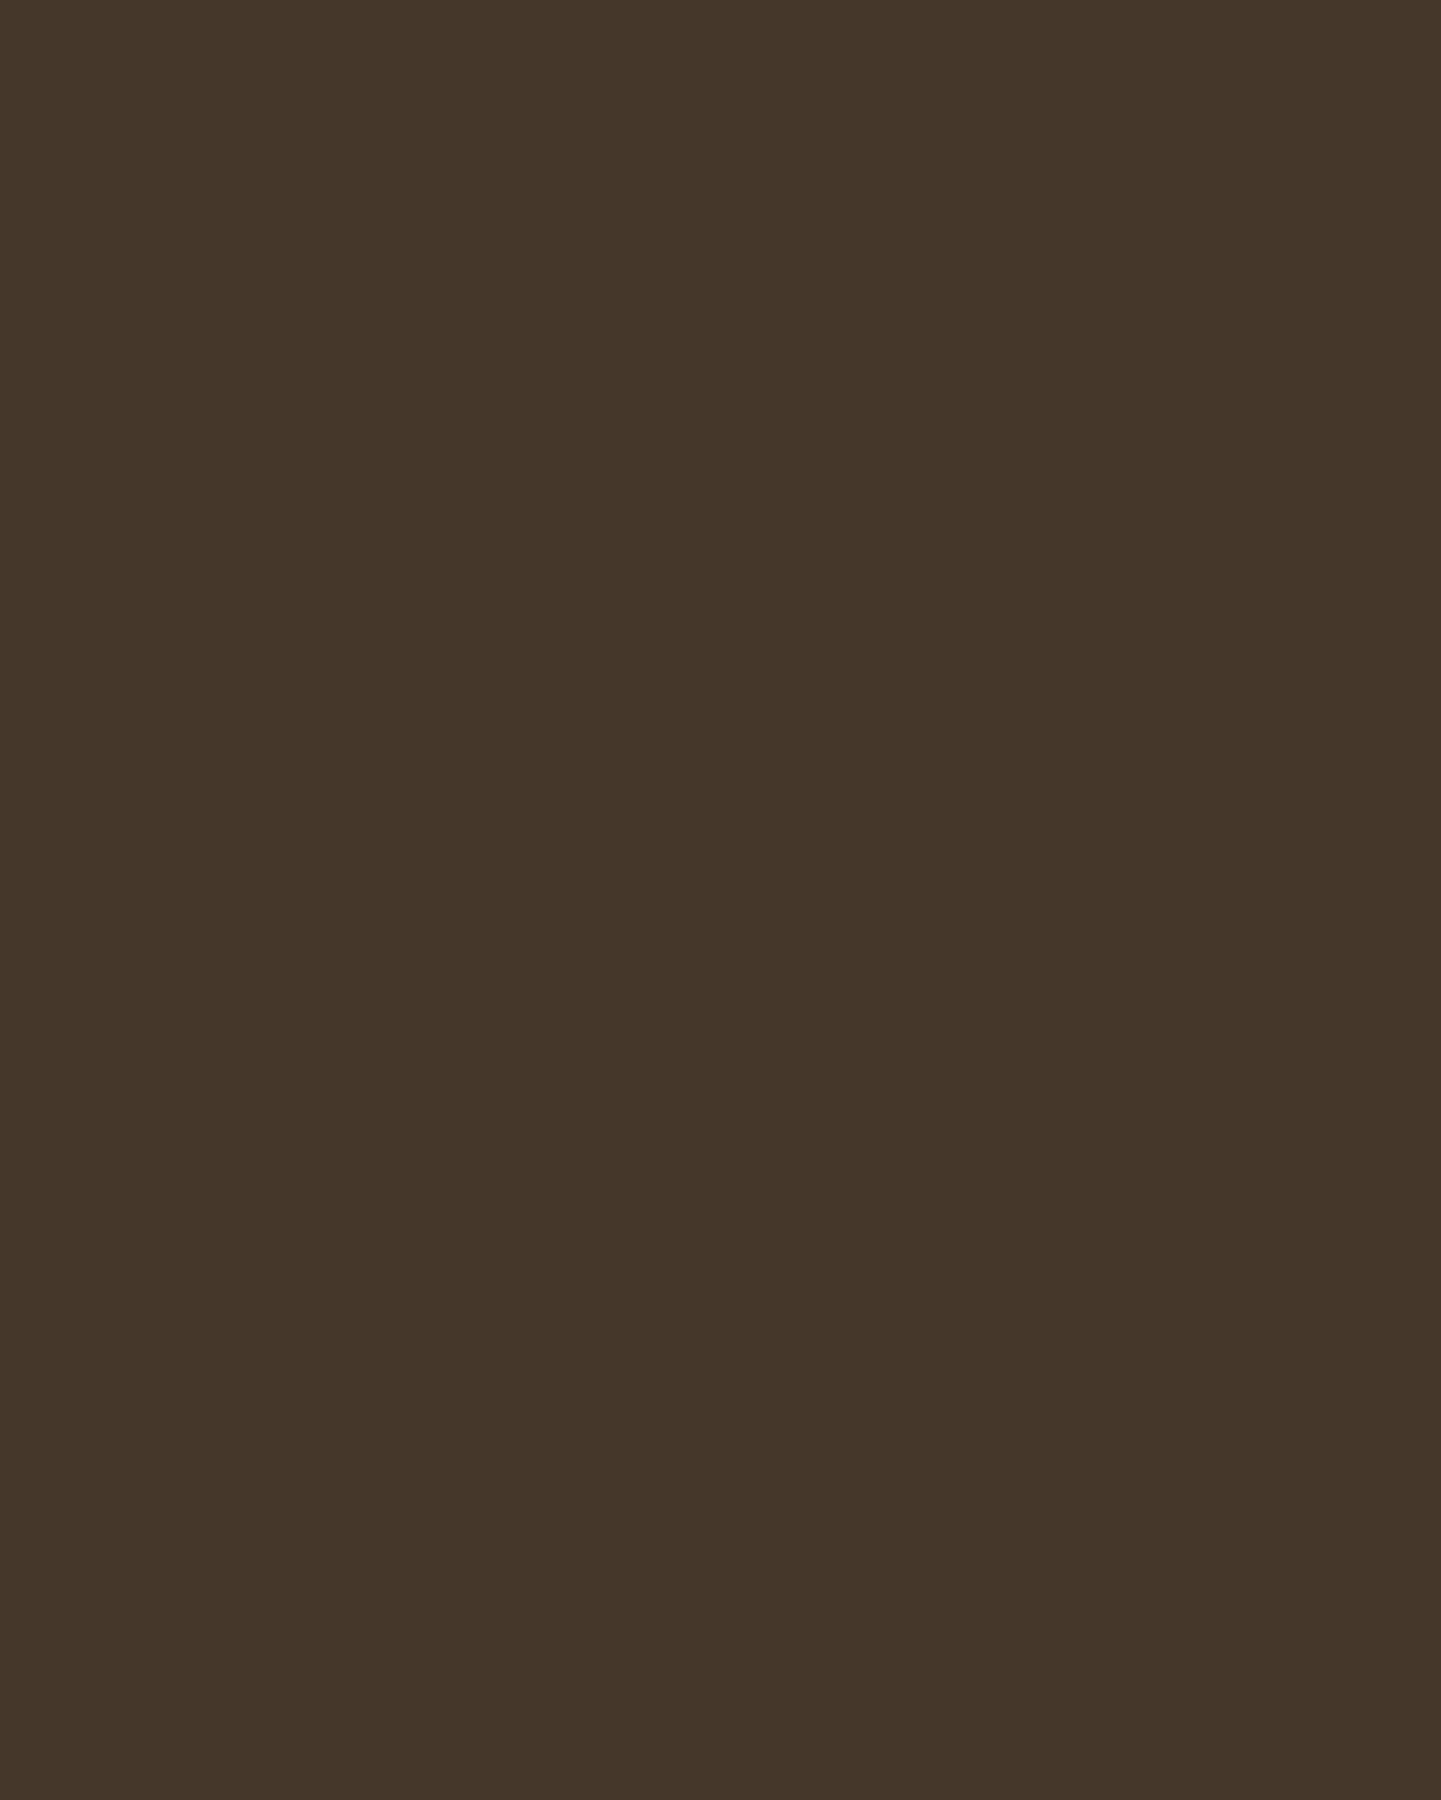 Орест Кипренский. Цыганка с веткой мирта в руке. 1819. Государственная Третьяковская галерея, Москва